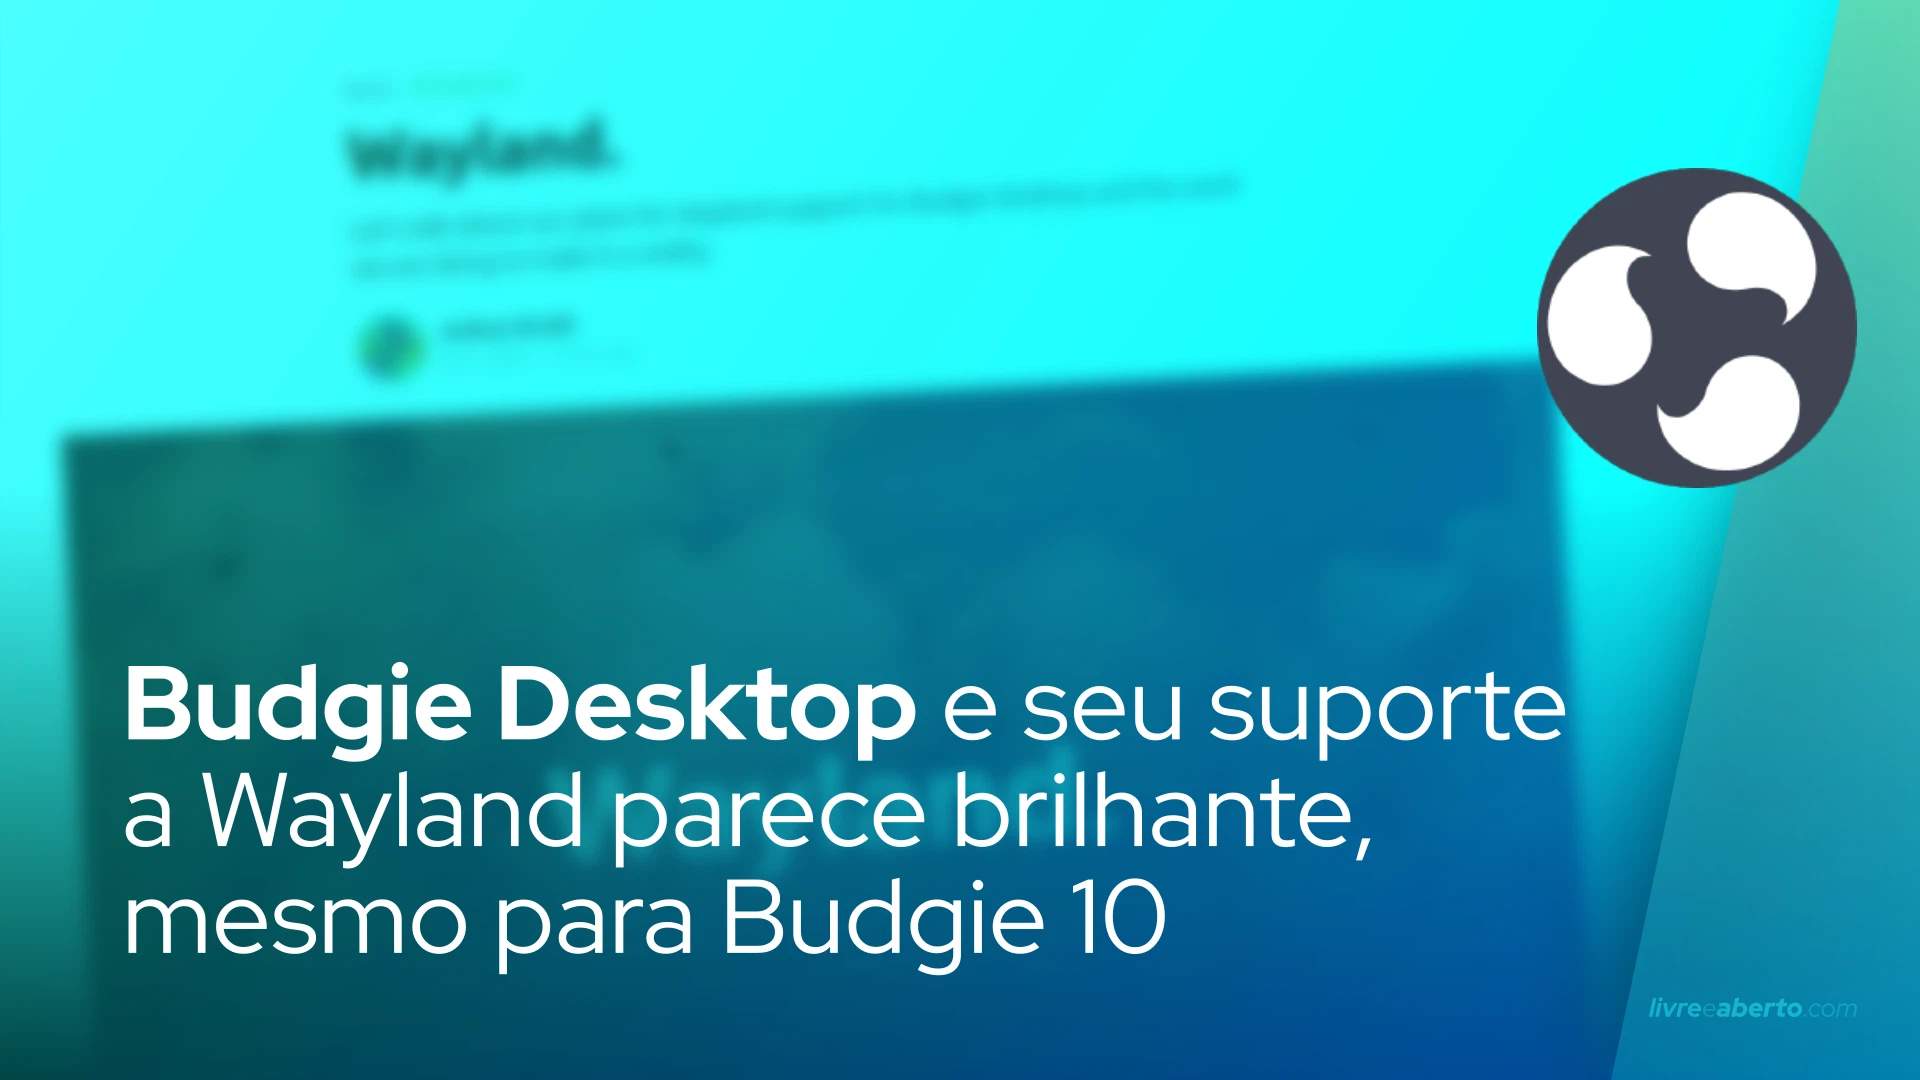 Budgie Desktop e seu suporte a Wayland parece brilhante, mesmo para Budgie 10